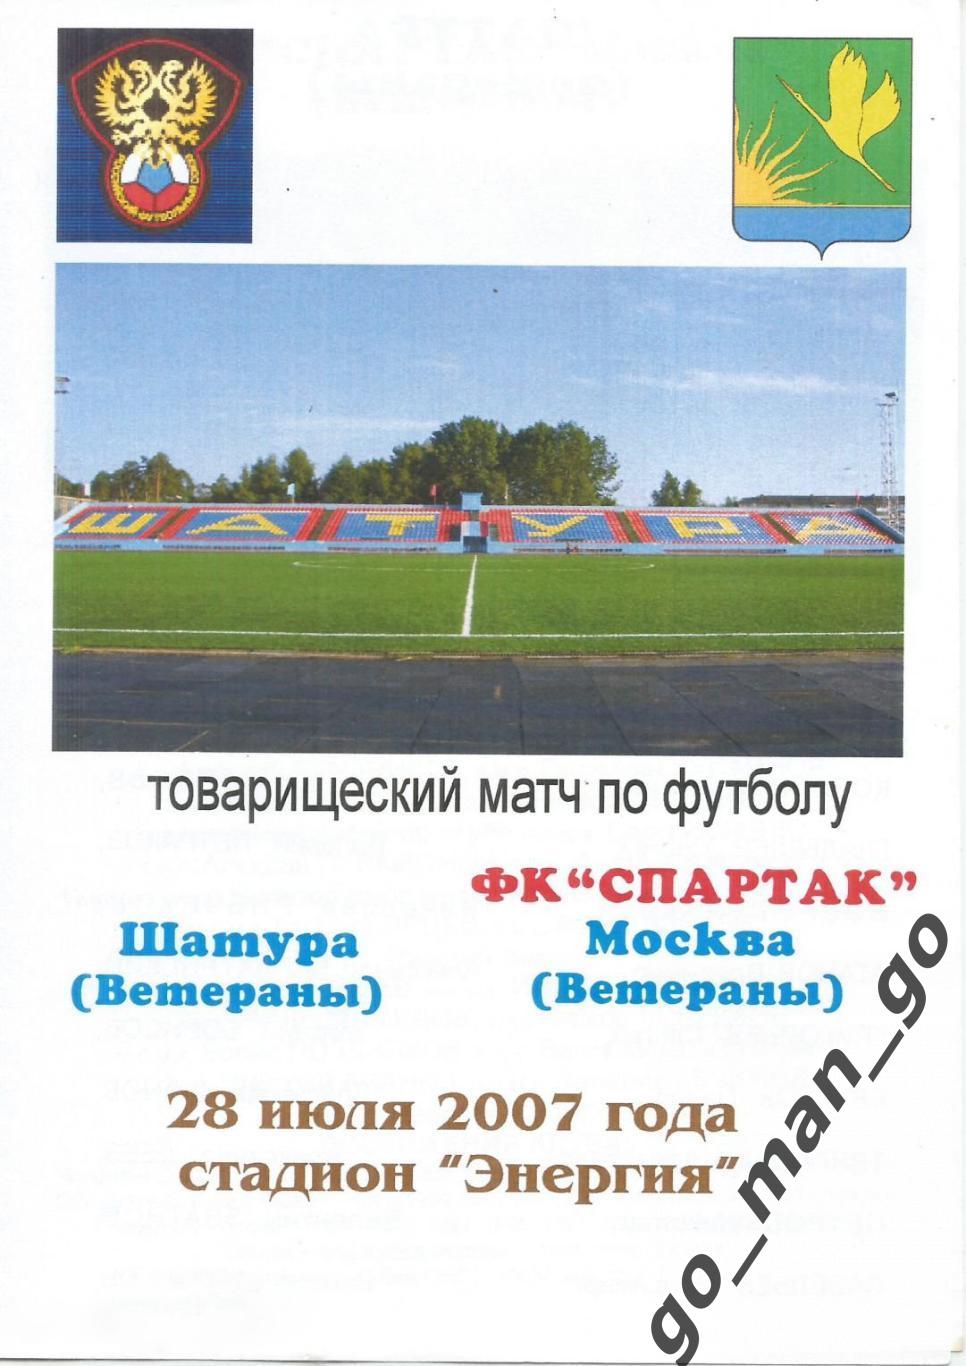 ШАТУРА сборная ветераны – СПАРТАК Москва ветераны 28.07.2007, товарищеский матч.